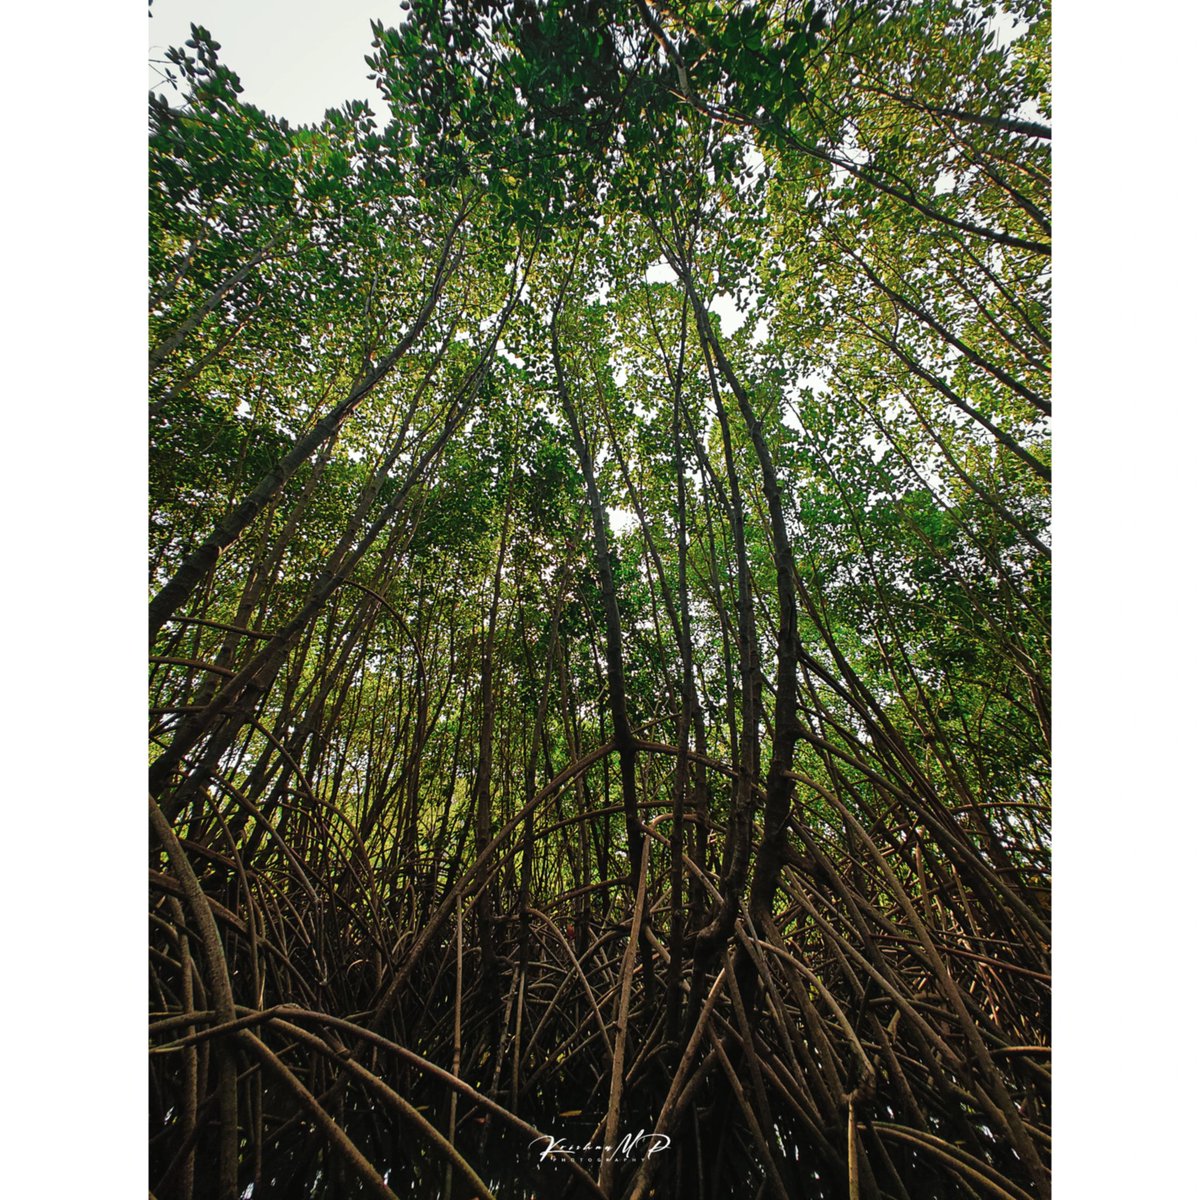 Mangrove forest, Honnavara
.
.
#natureshots #mangroveforest #honnavara #landsacape #incredibleindia #onelplus #oneplusindia #traveludupi #karnatakatourism #krishna_m_p #2023